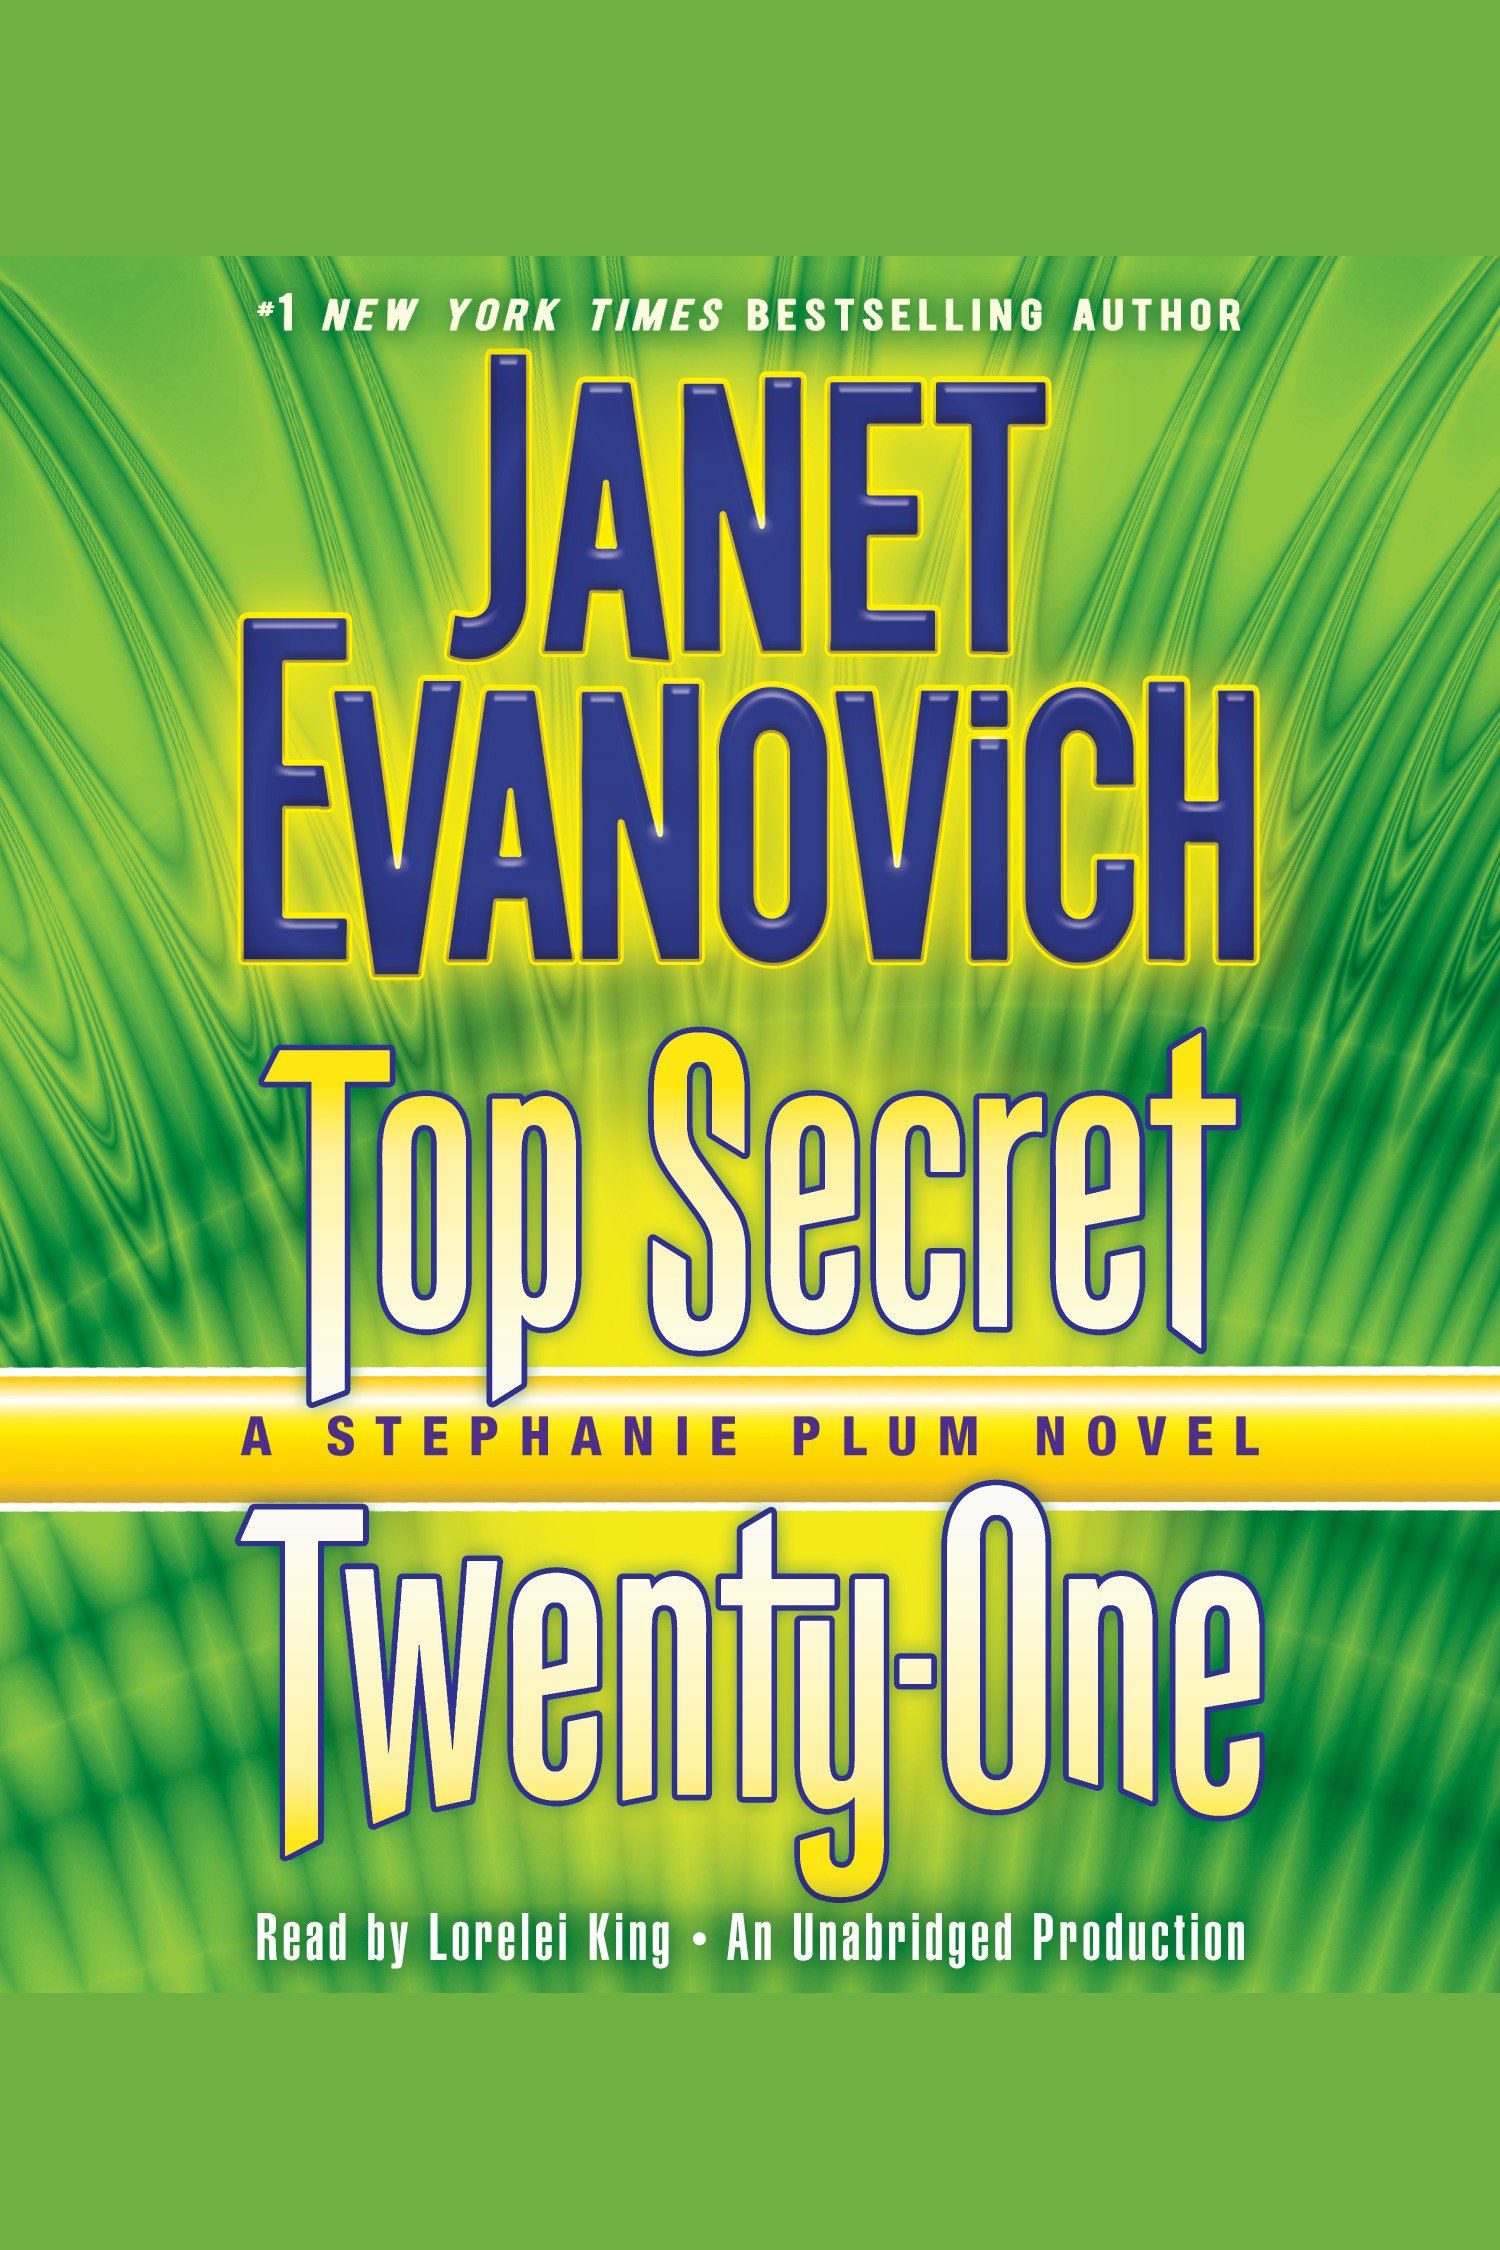 Top secret twenty-one a Stephanie Plum novel cover image